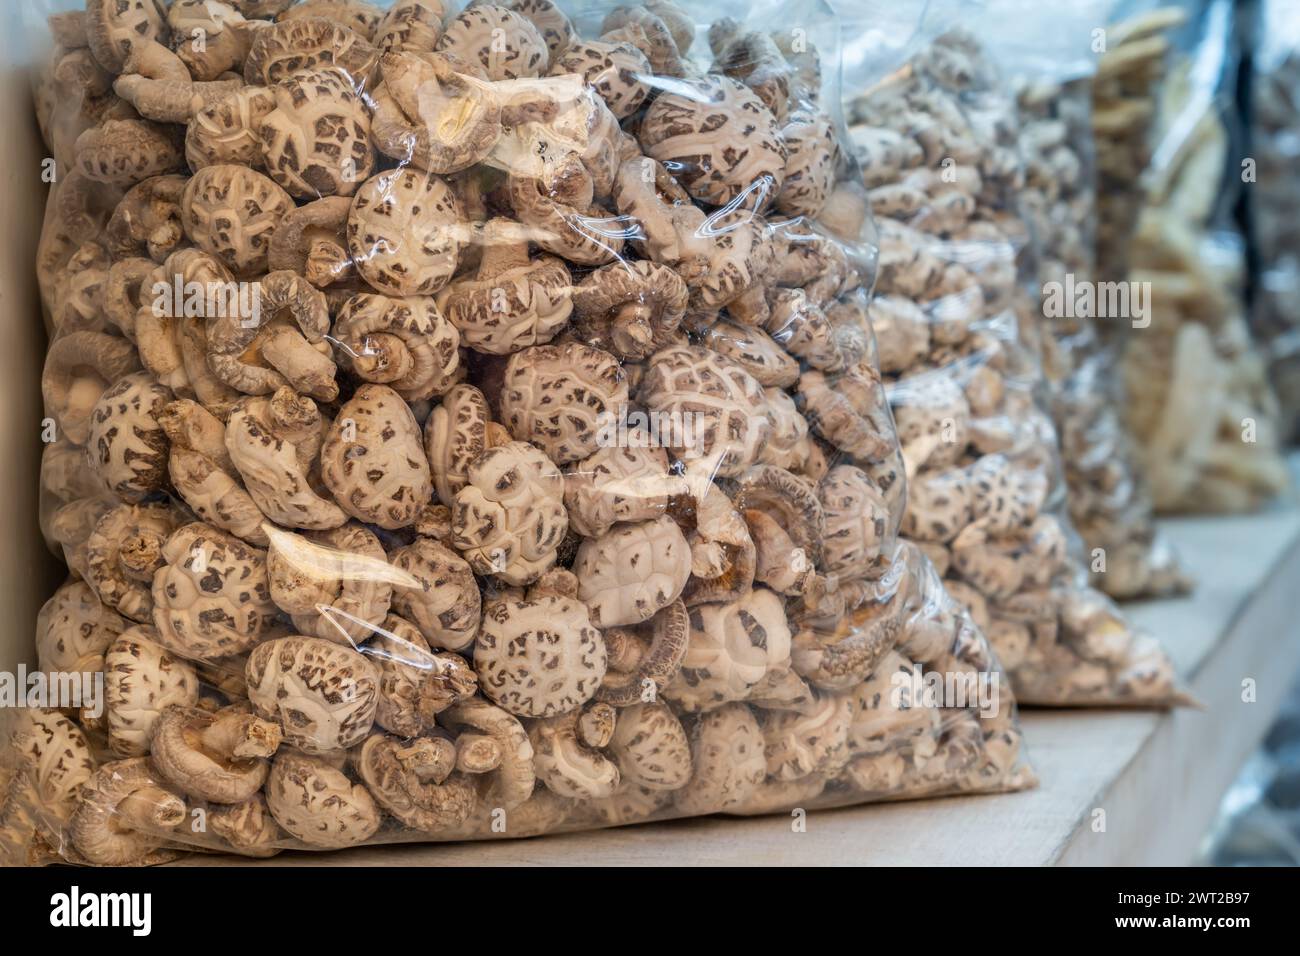 Dans des sacs en plastique transparents champignons shiitake à vendre sur le marché. Shiitake est un champignon comestible originaire d'Asie de l'est qui est cultivé et consu Banque D'Images